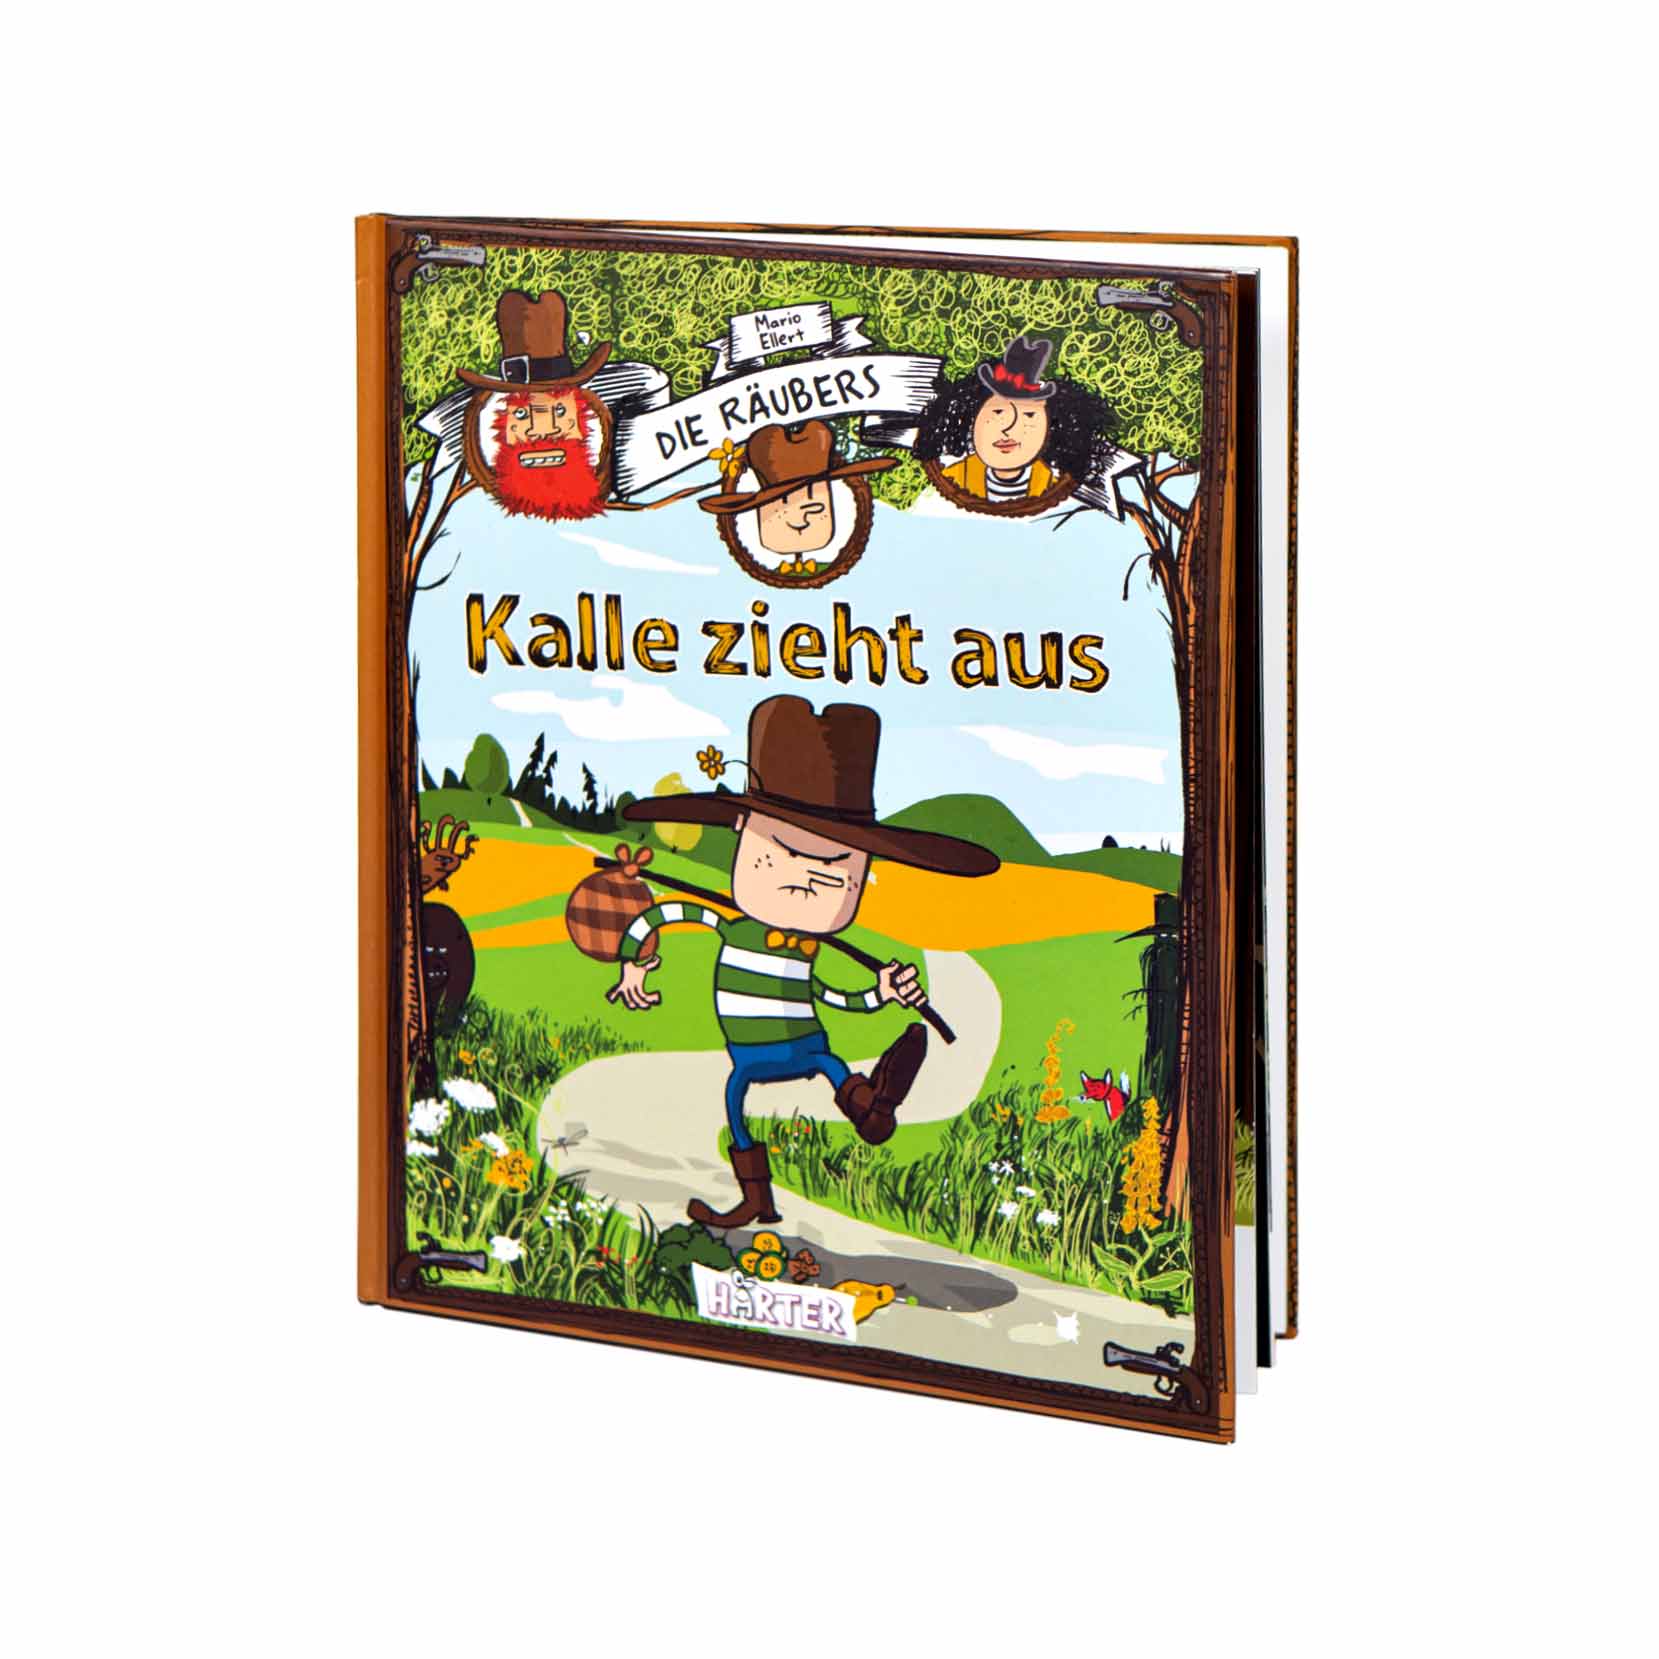 Die Räubers – Kalle zieht aus | Kinderbuch